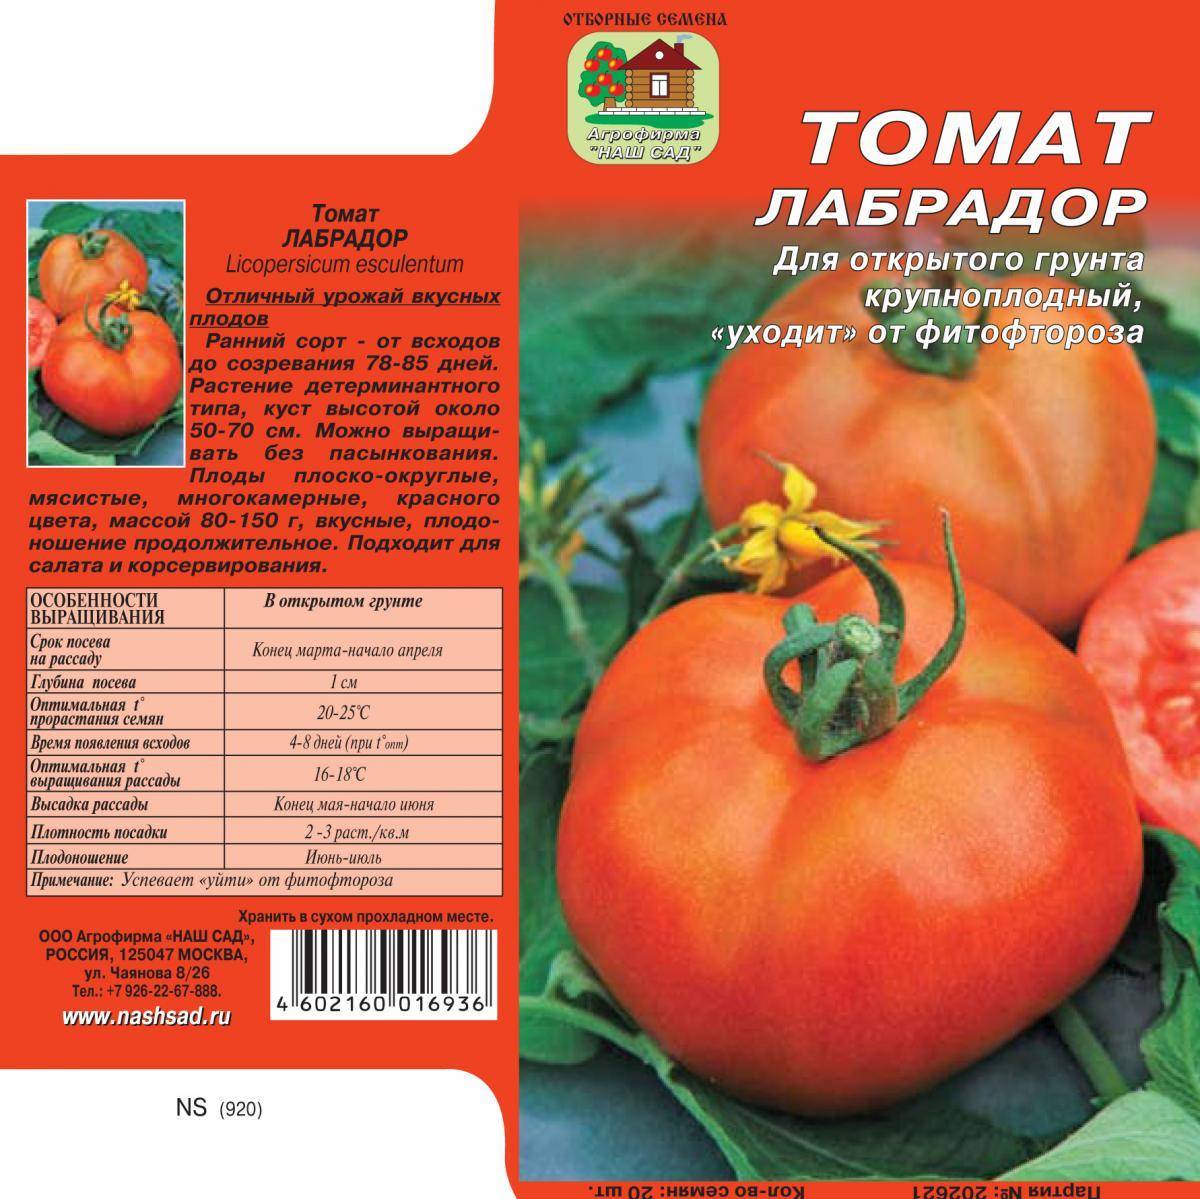 Описание сорта томата львович, его преимущества и недостатки